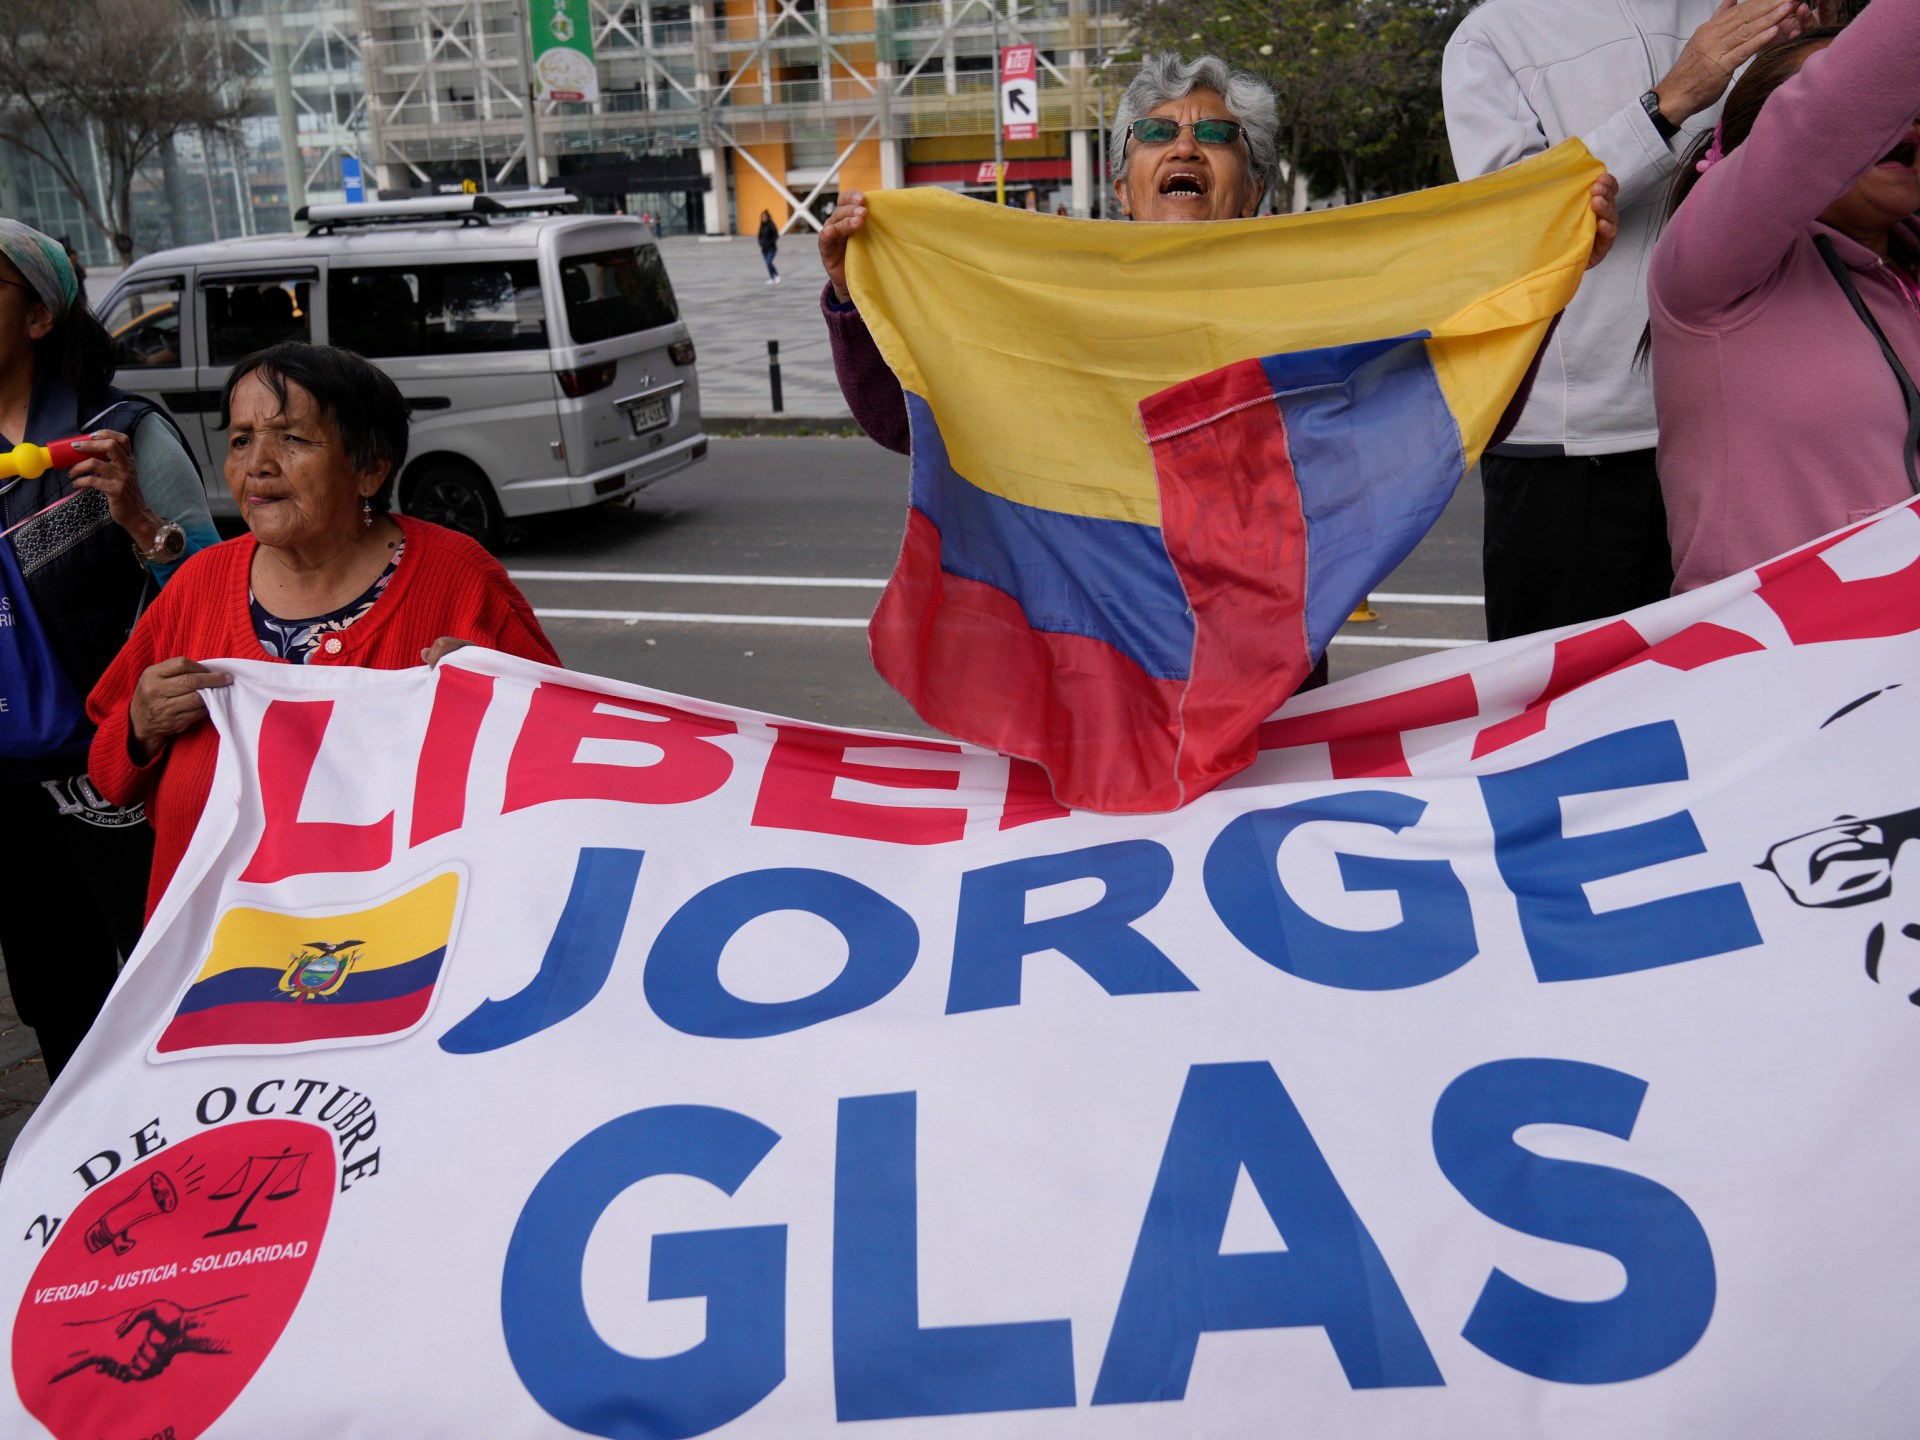 Ecuador spat: Trotsky to the shah, Mexico’s long history as home to exiles | Politics News